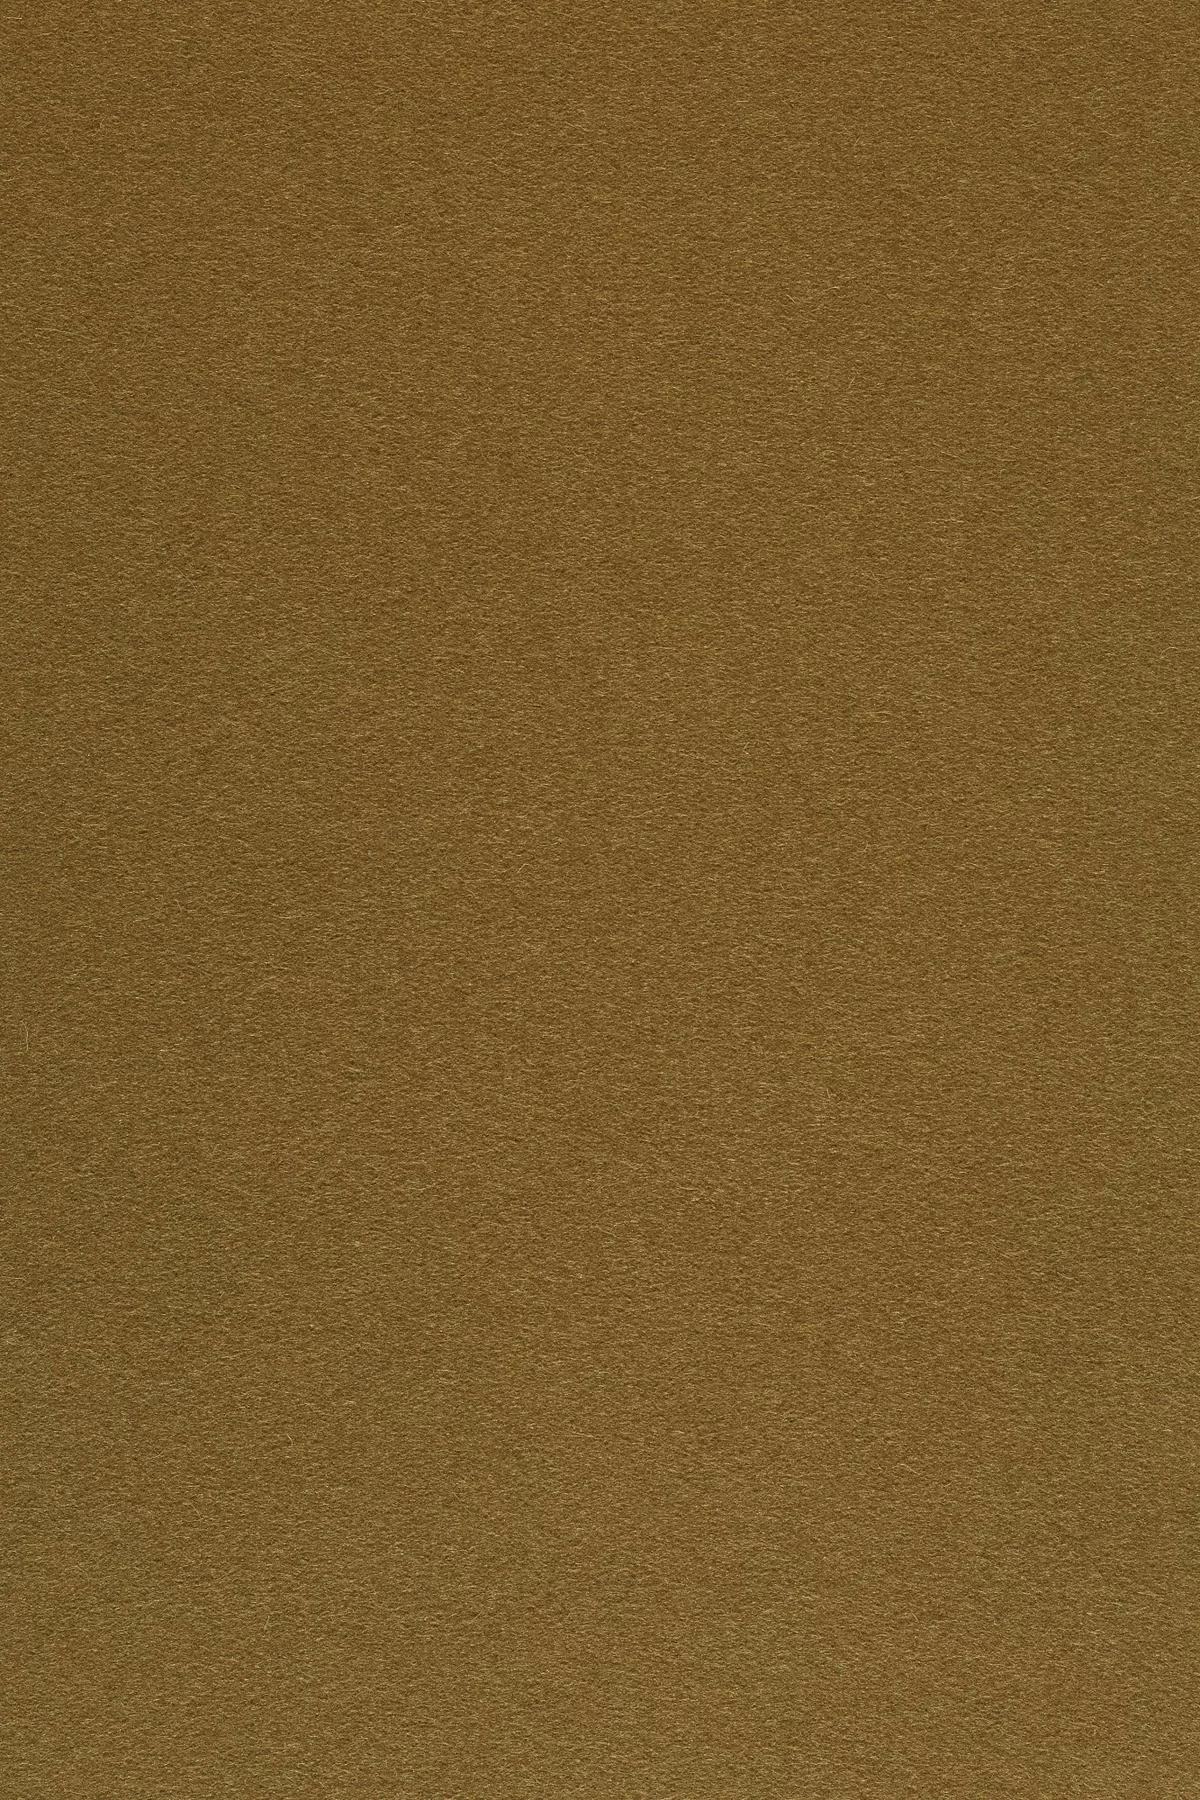 Fabric sample Divina 3 346 brown